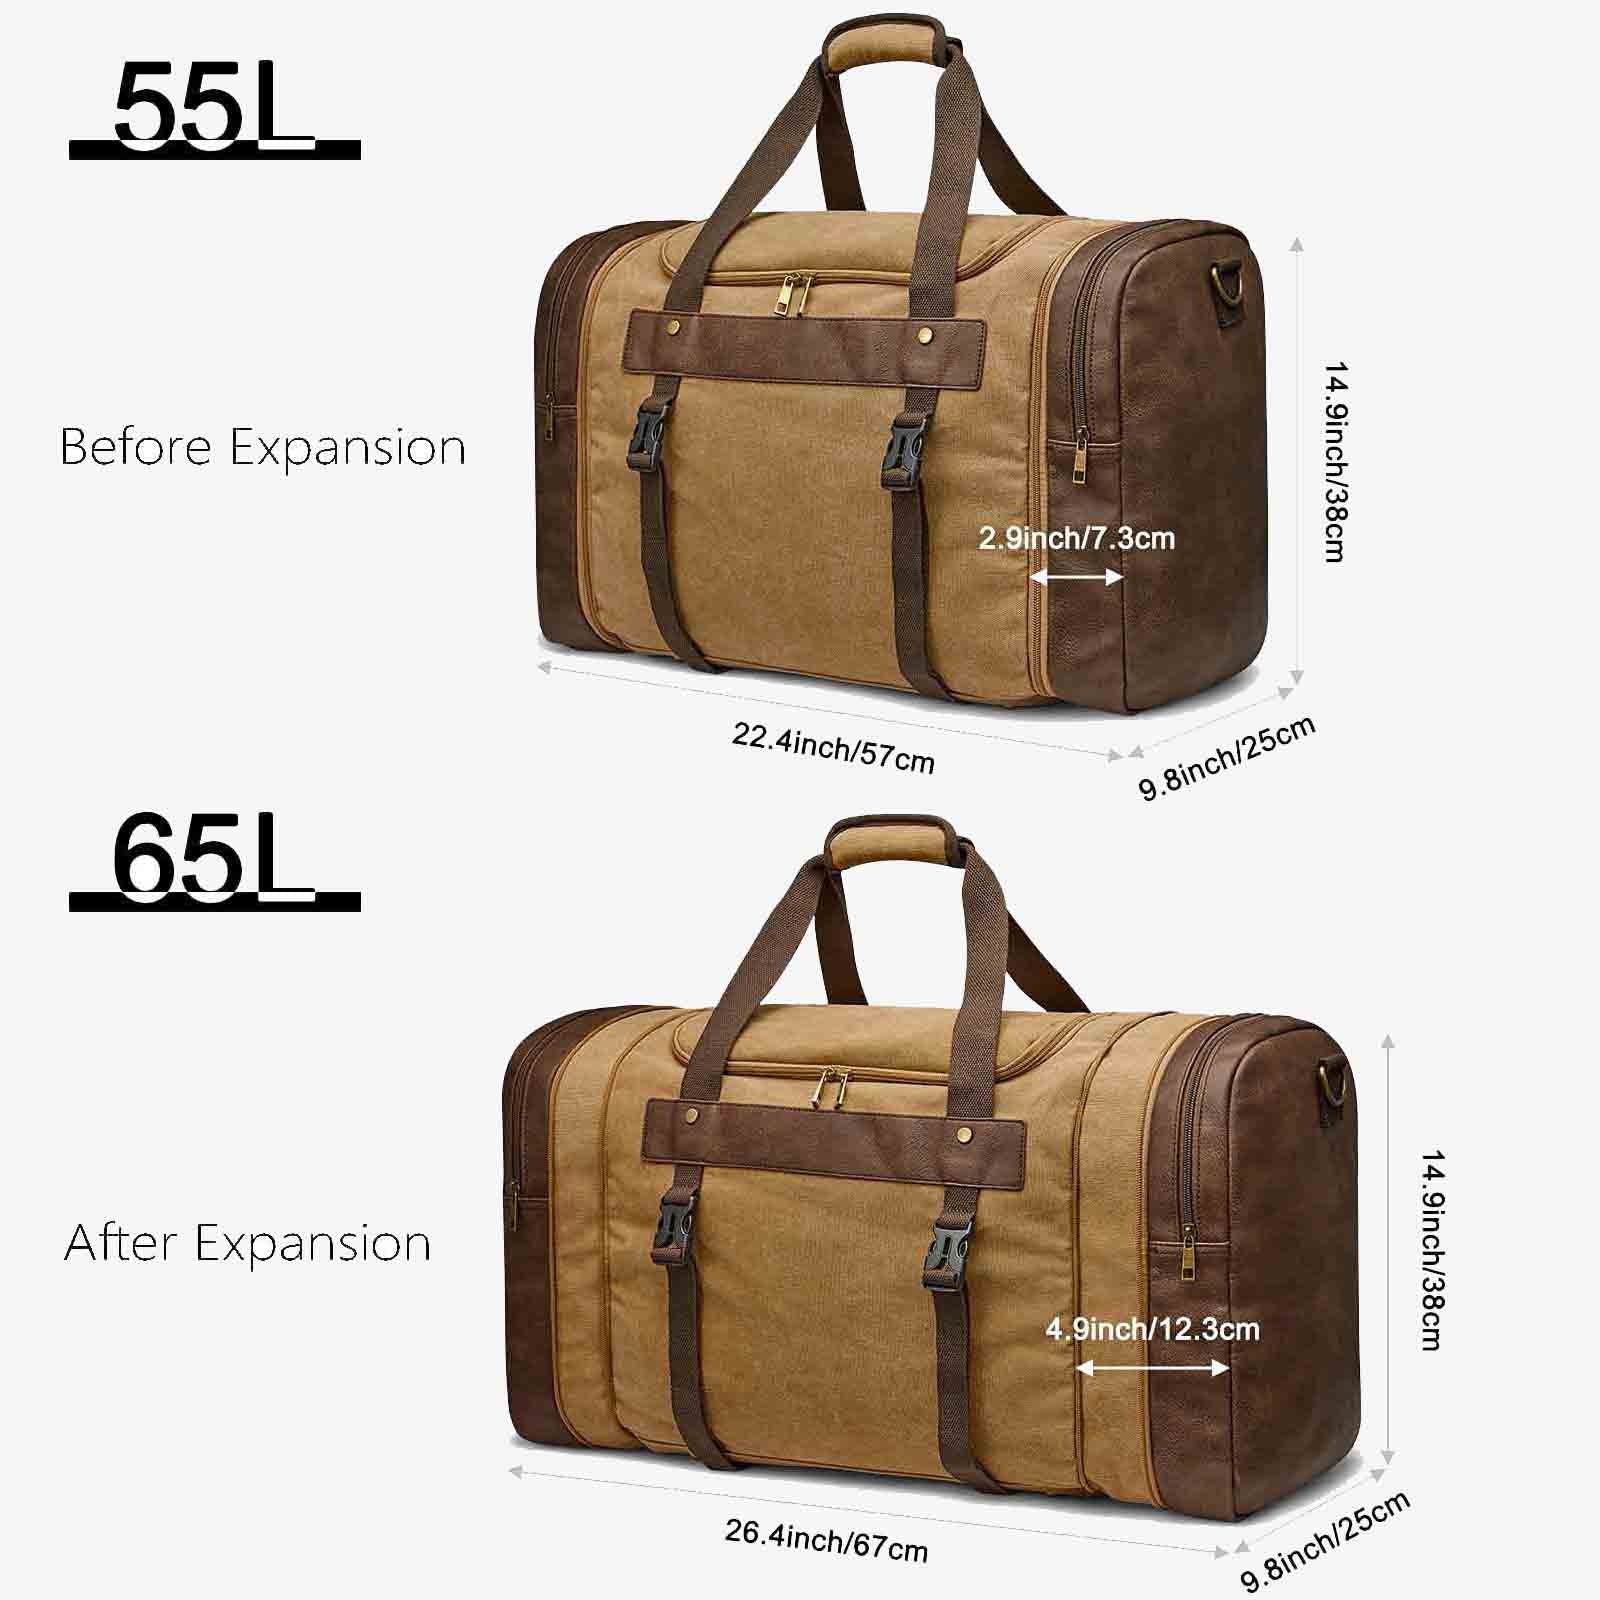 55L Canvas Duffel Bag Expansion Compartment